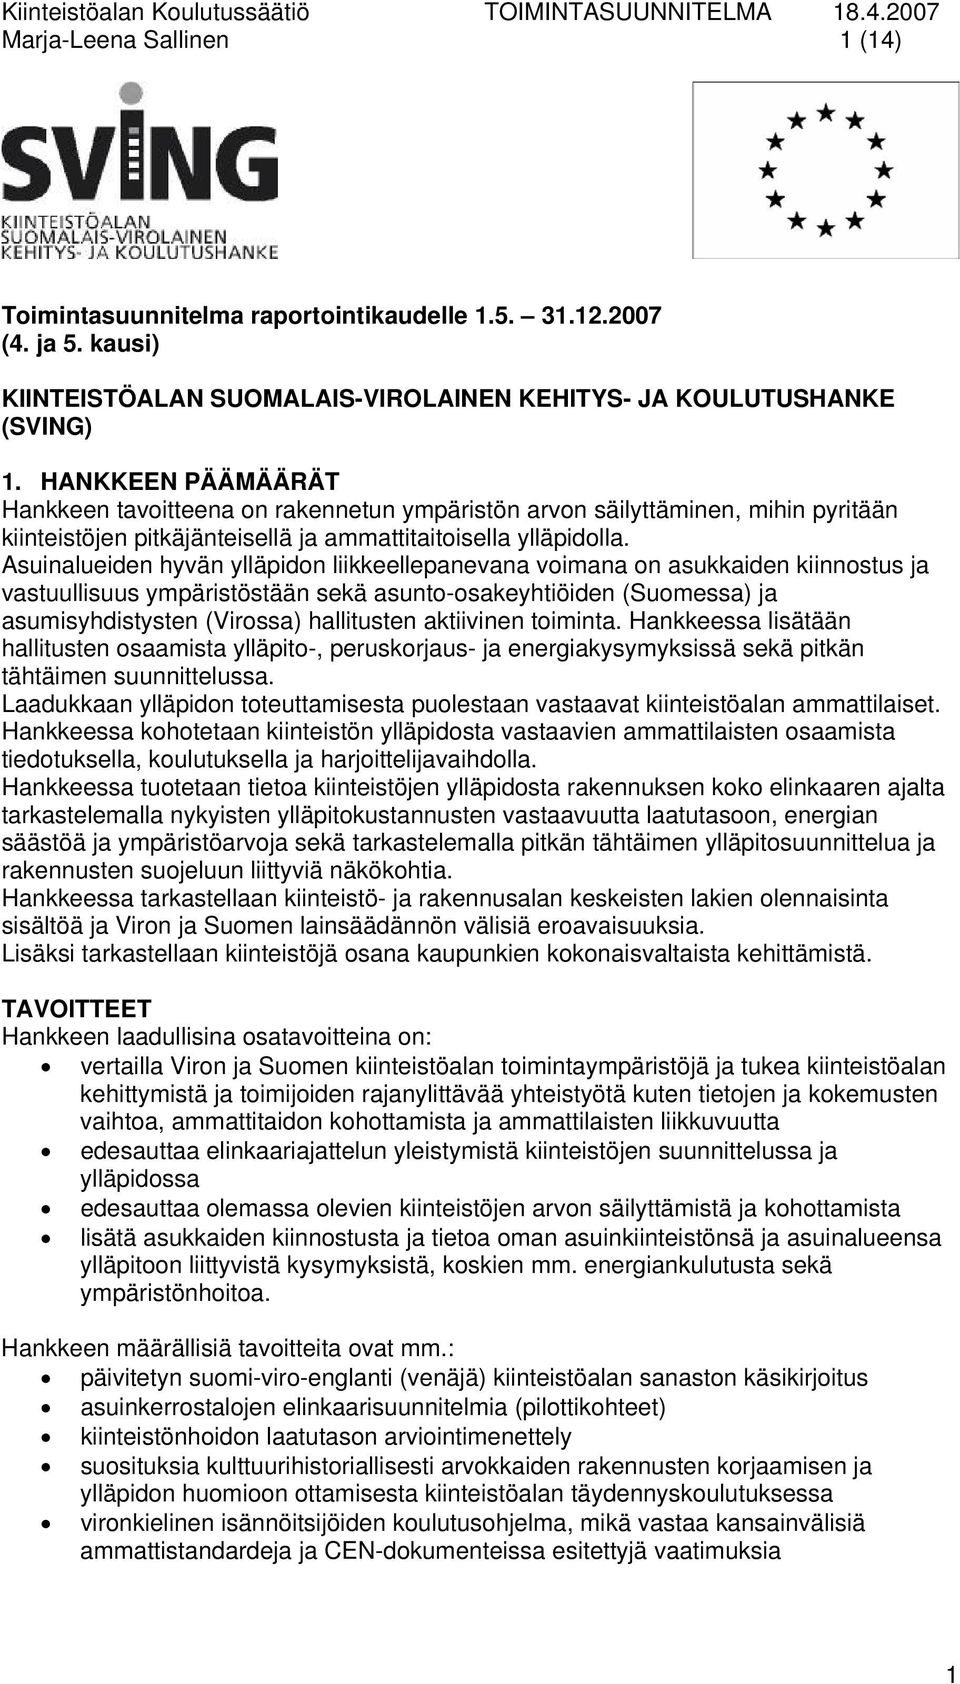 Asuinalueiden hyvän ylläpidon liikkeellepanevana voimana on asukkaiden kiinnostus ja vastuullisuus ympäristöstään sekä asunto-osakeyhtiöiden (Suomessa) ja asumisyhdistysten (Virossa) hallitusten